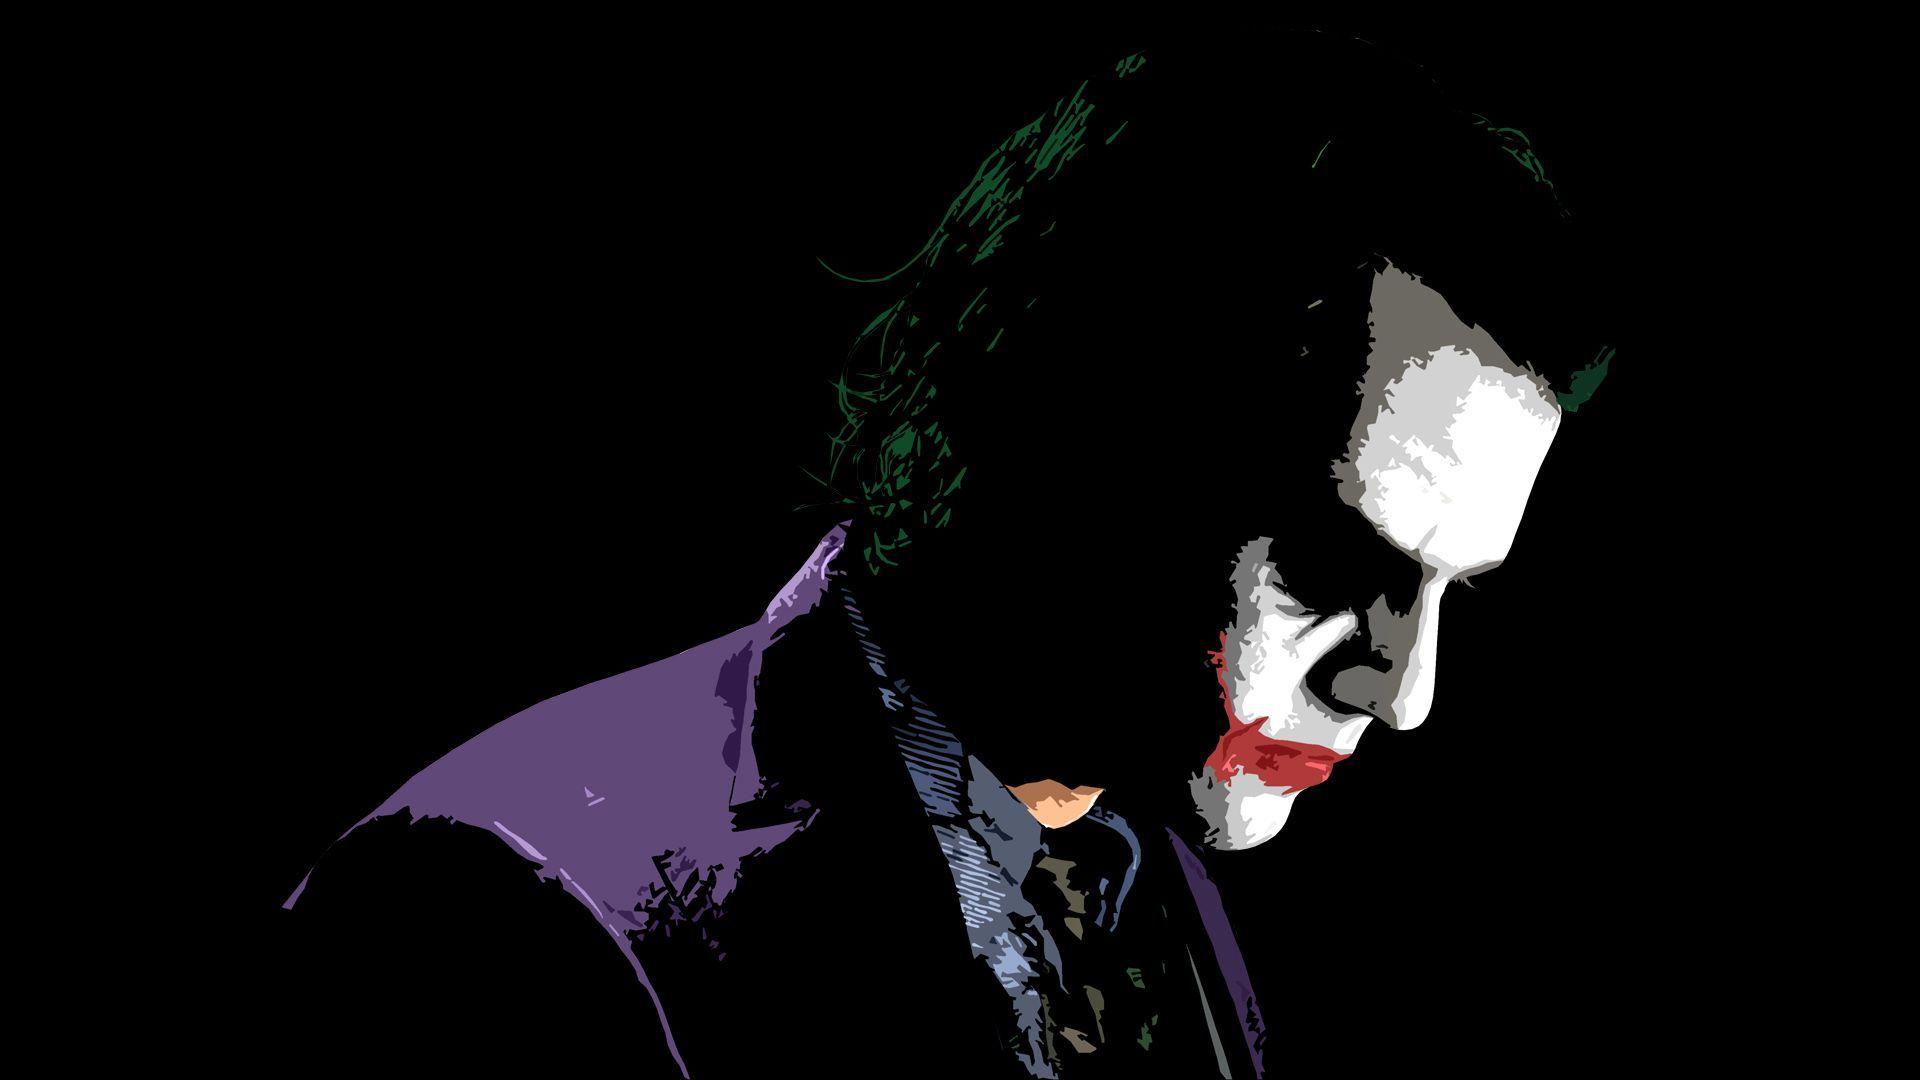 Wallpaper del Joker!